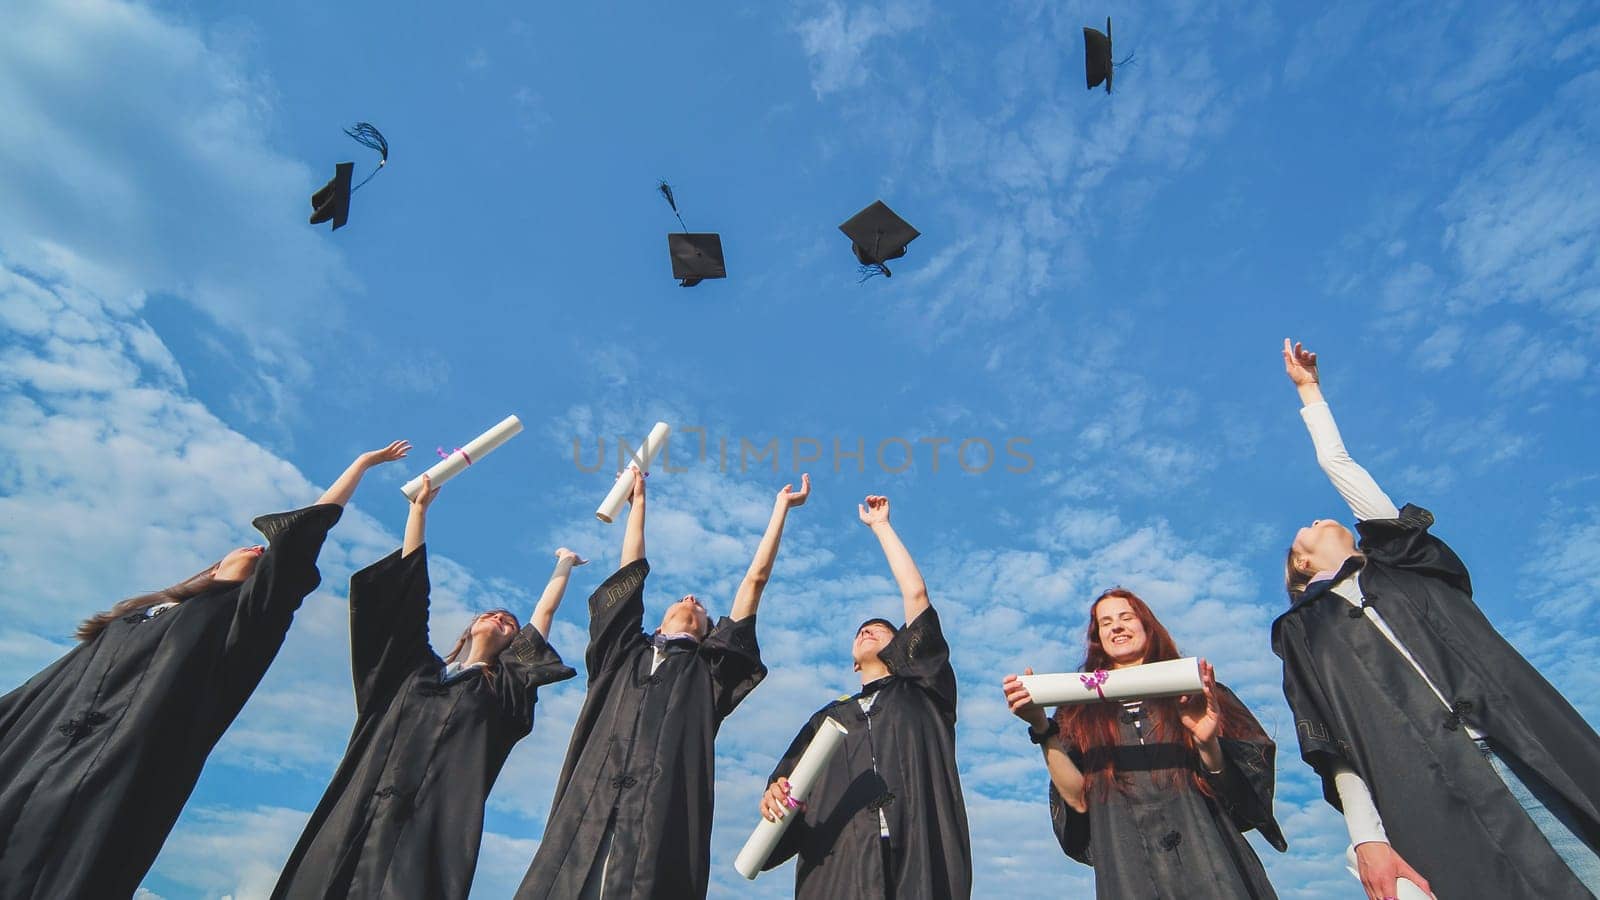 Graduation Caps Thrown in the Air